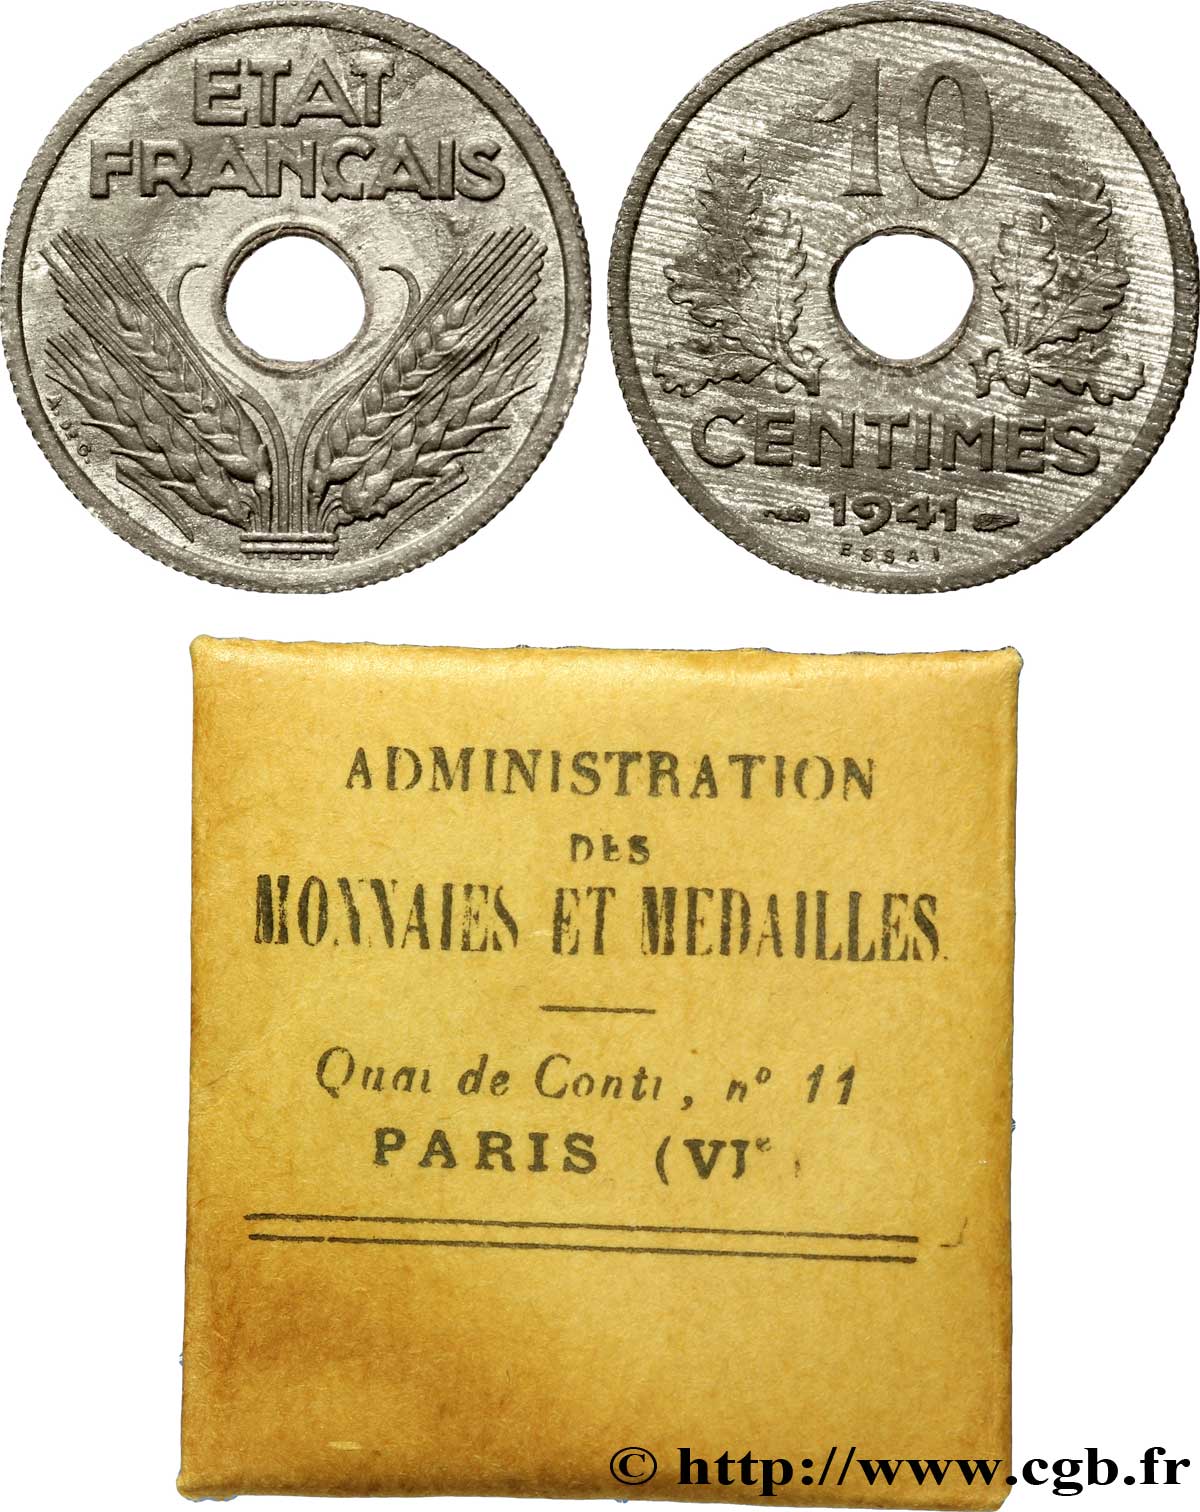 Essai de 10 centimes, État français, grand module 1941  F.141/1 SPL 